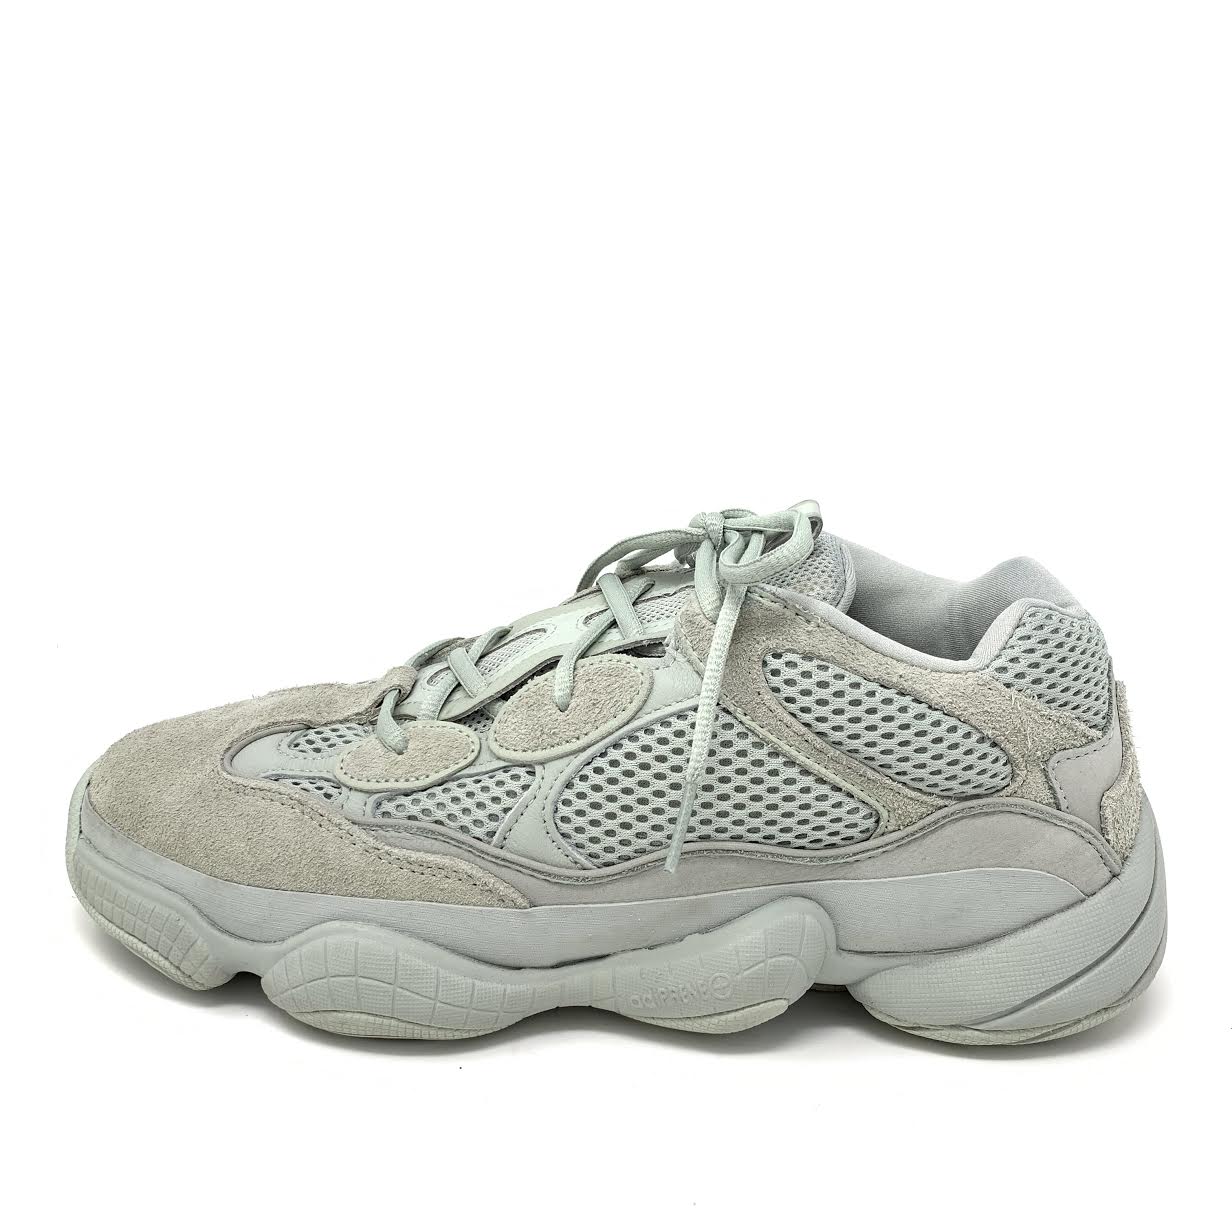 Yeezy X Adidas Desert Rat Sneakers Size 10.5